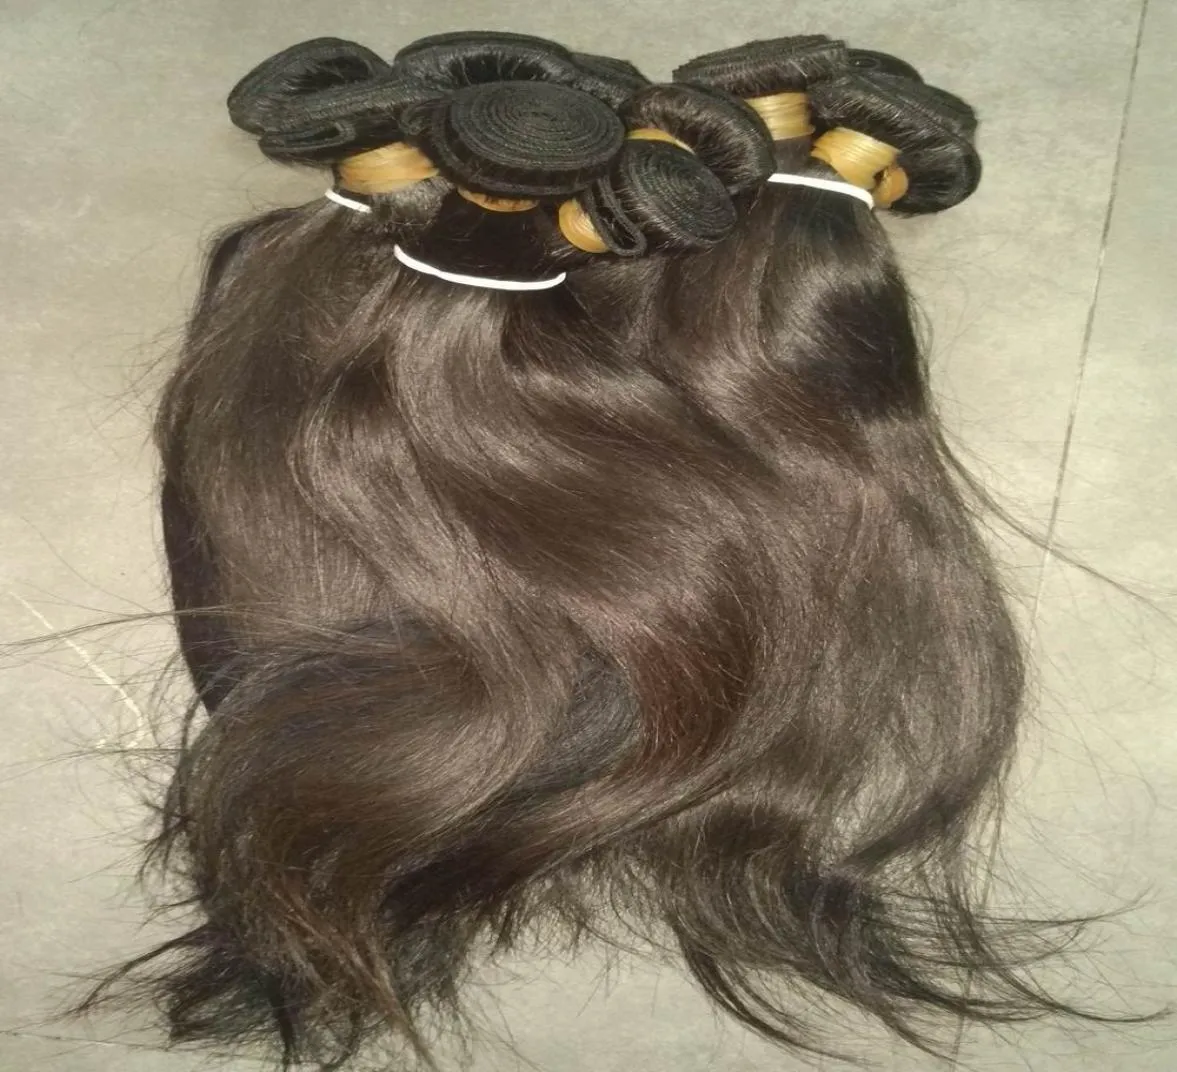 Grosso virgem natural cambojano cabelo humano reto tramas sedosas não processadas 3pcslot Black Friday Novo 7556124